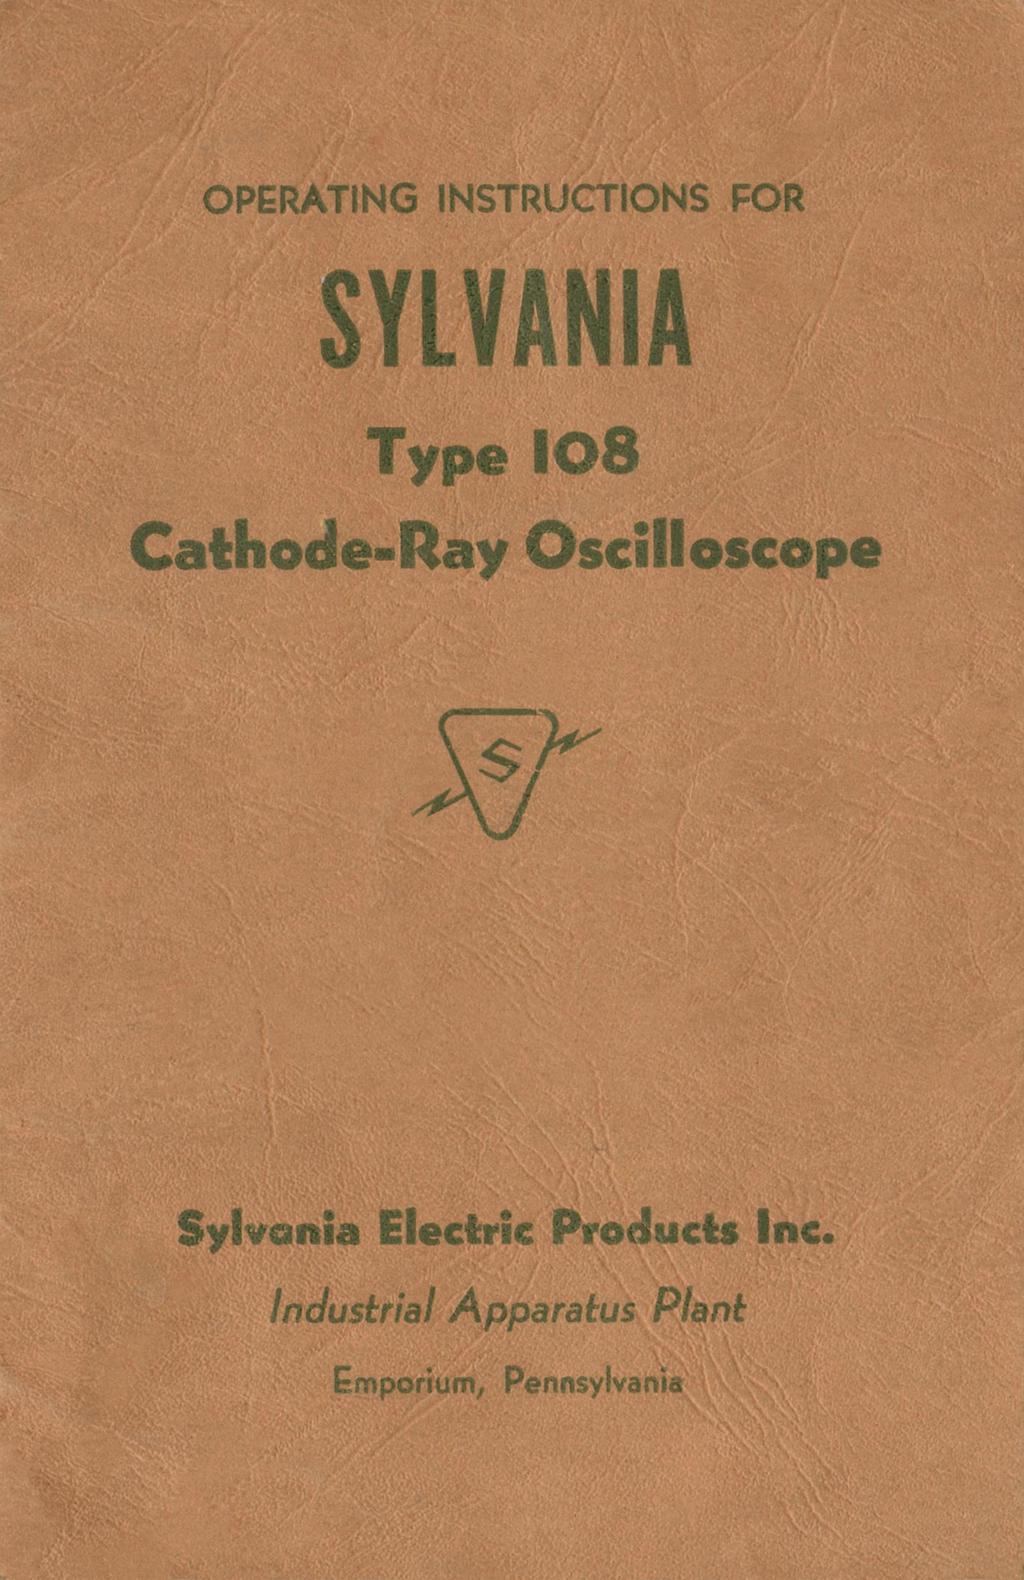 OPERATING INSTRUCTIONS FOR SYLVANIA Type I08 Cathode-Ray Oscilloscope